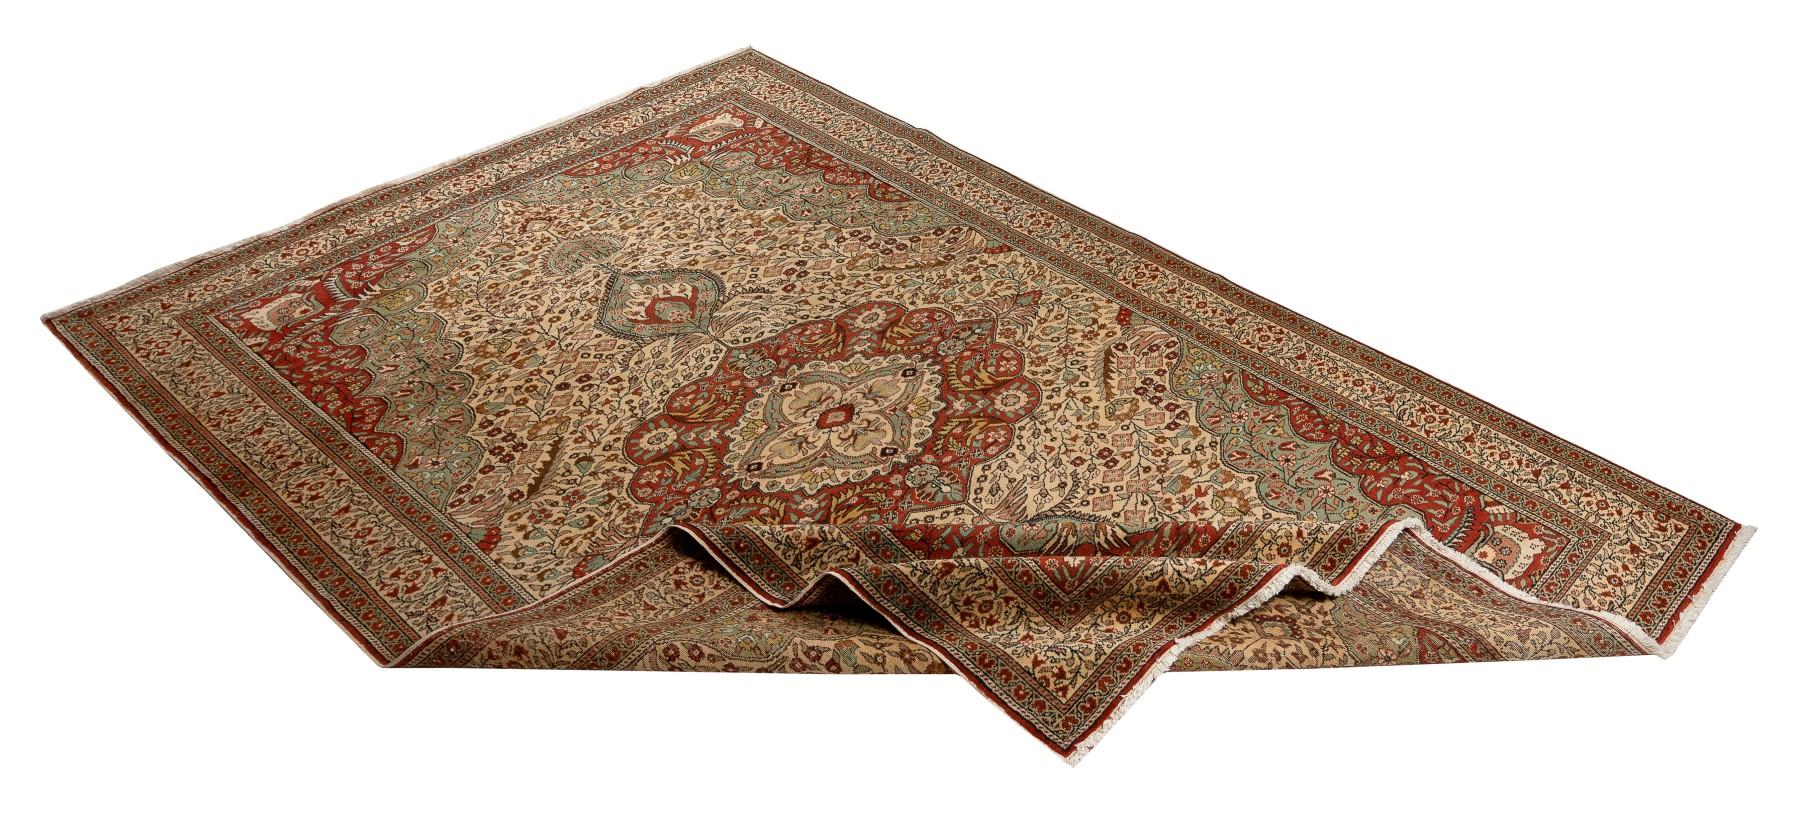 Ein hochdekorativer alter Kayseri-Teppich aus den 1970er Jahren aus der Stadt Kayseri in der Zentraltürkei, die lange Zeit ein berühmtes Zentrum der Teppichherstellung war. Dieser fein handgeknüpfte Teppich weist alle klassischen Elemente seiner Art